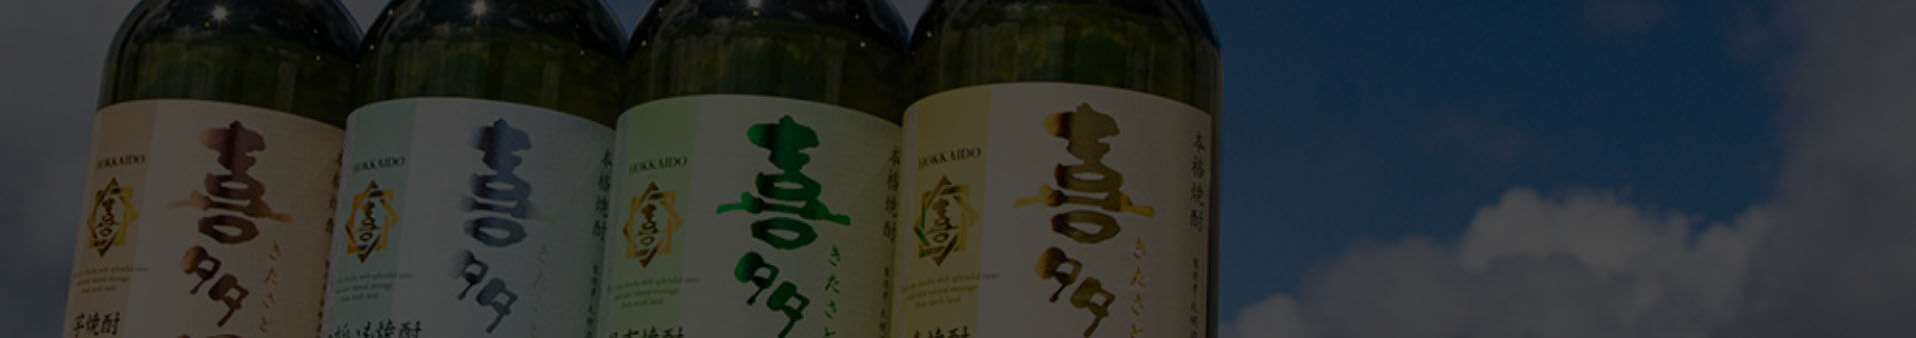 札幌酒精 オンラインショップ リニューアル 特別企画 サッポロソフトの札幌酒精から、本格焼酎「喜多里」のご提案です。